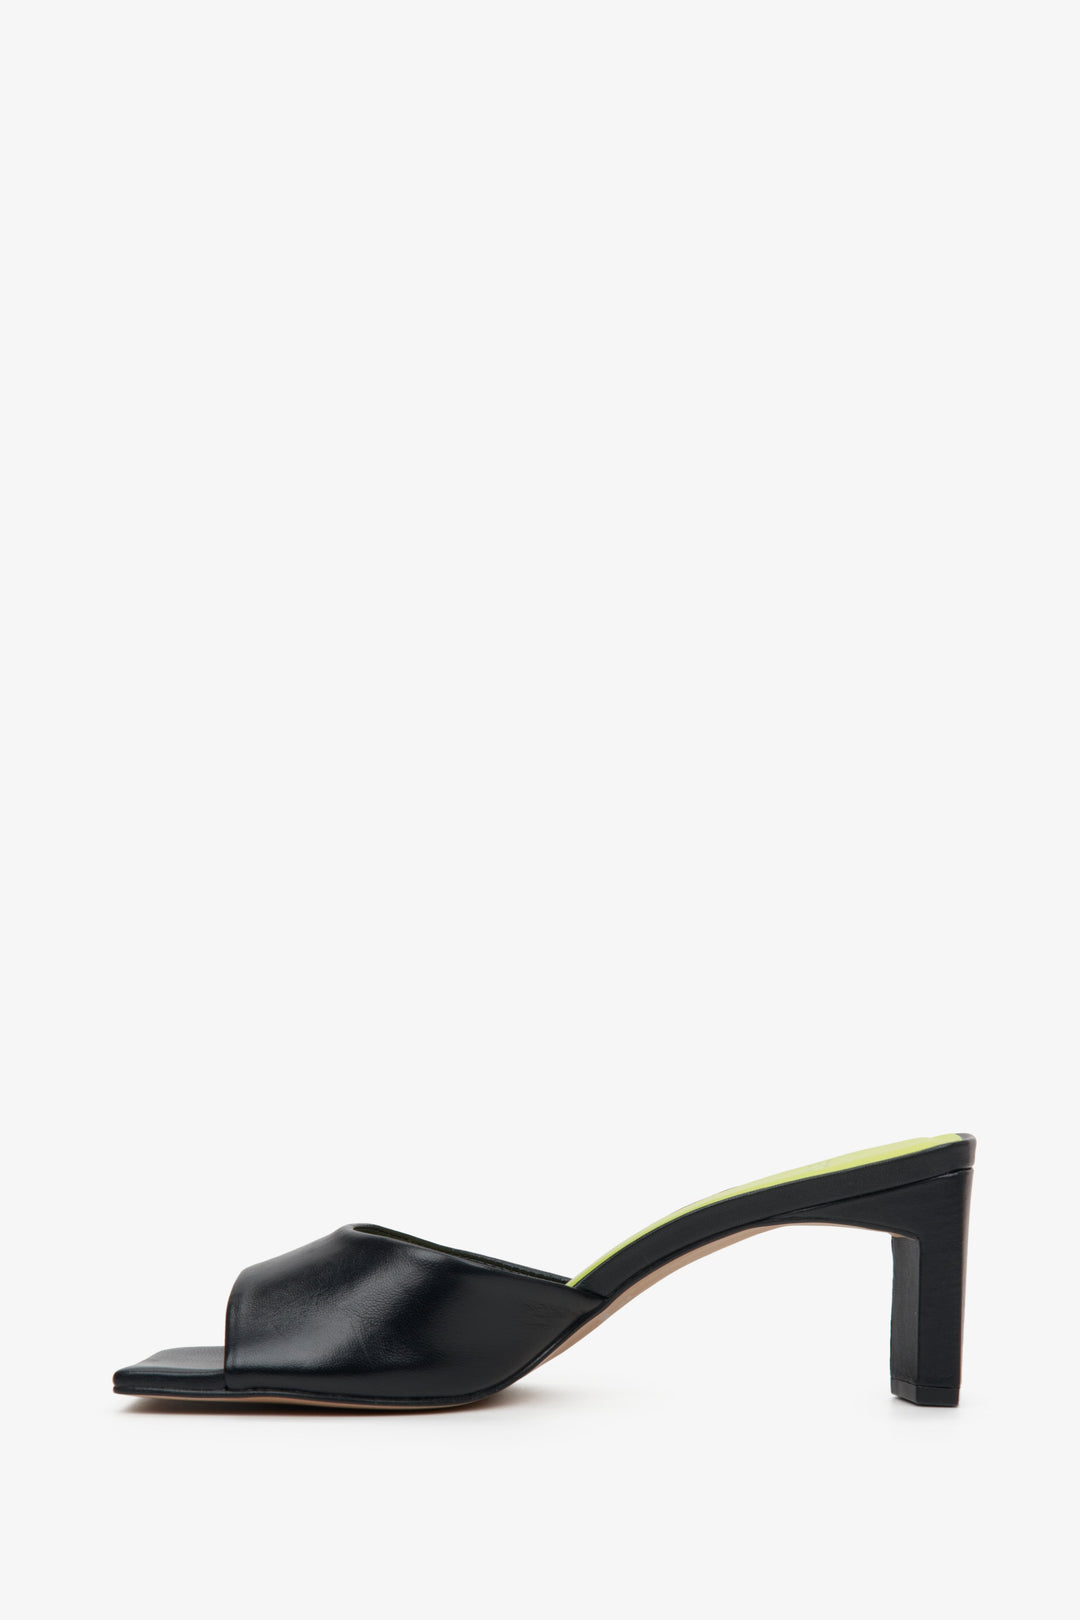 Eleganckie klapki damskie z włoskiej skóry naturalnej w kolorze czarnym marki Estro - profil buta.